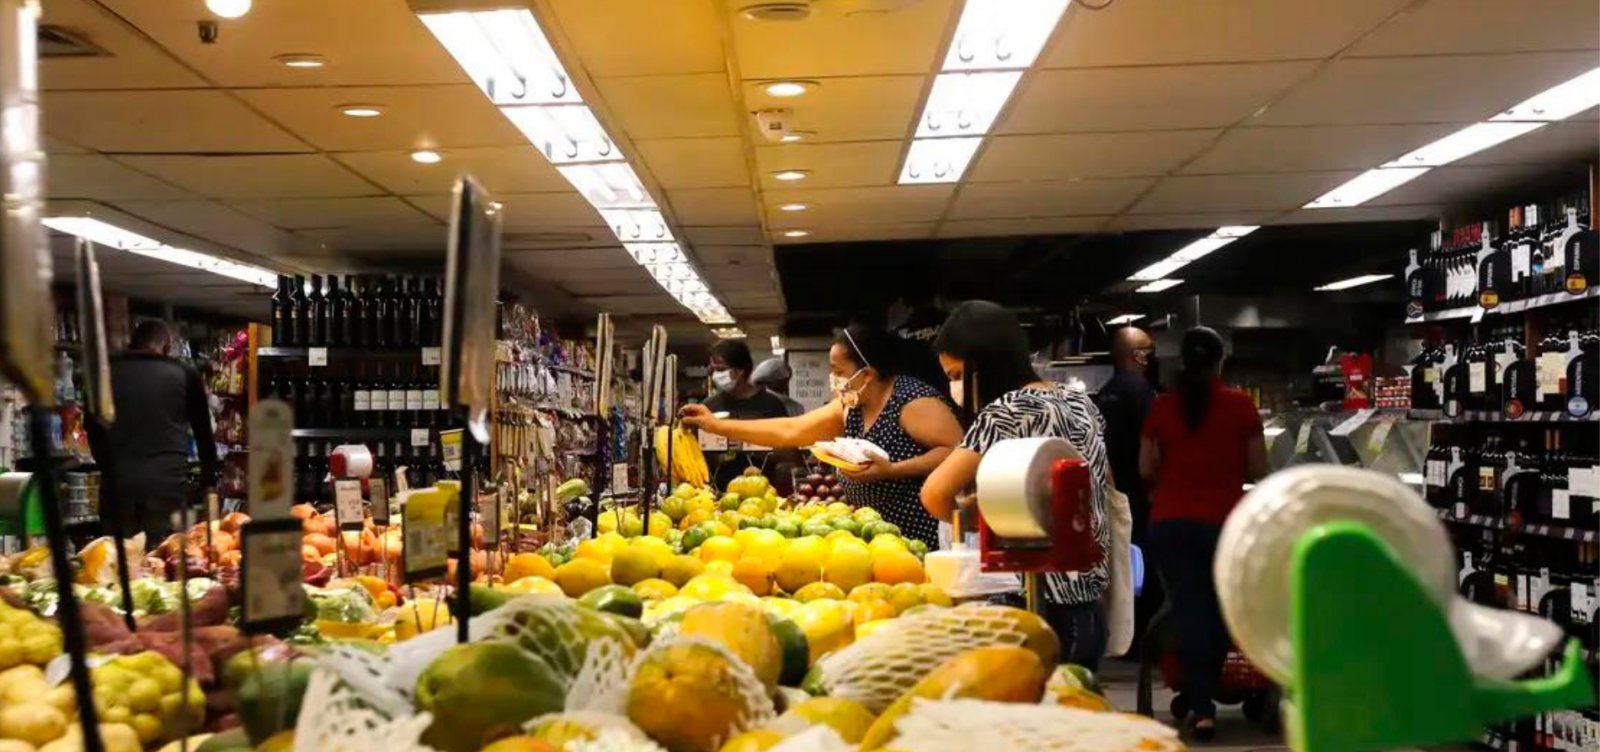 Puxada por alimentos, prévia da inflação sobe 0,36% em março